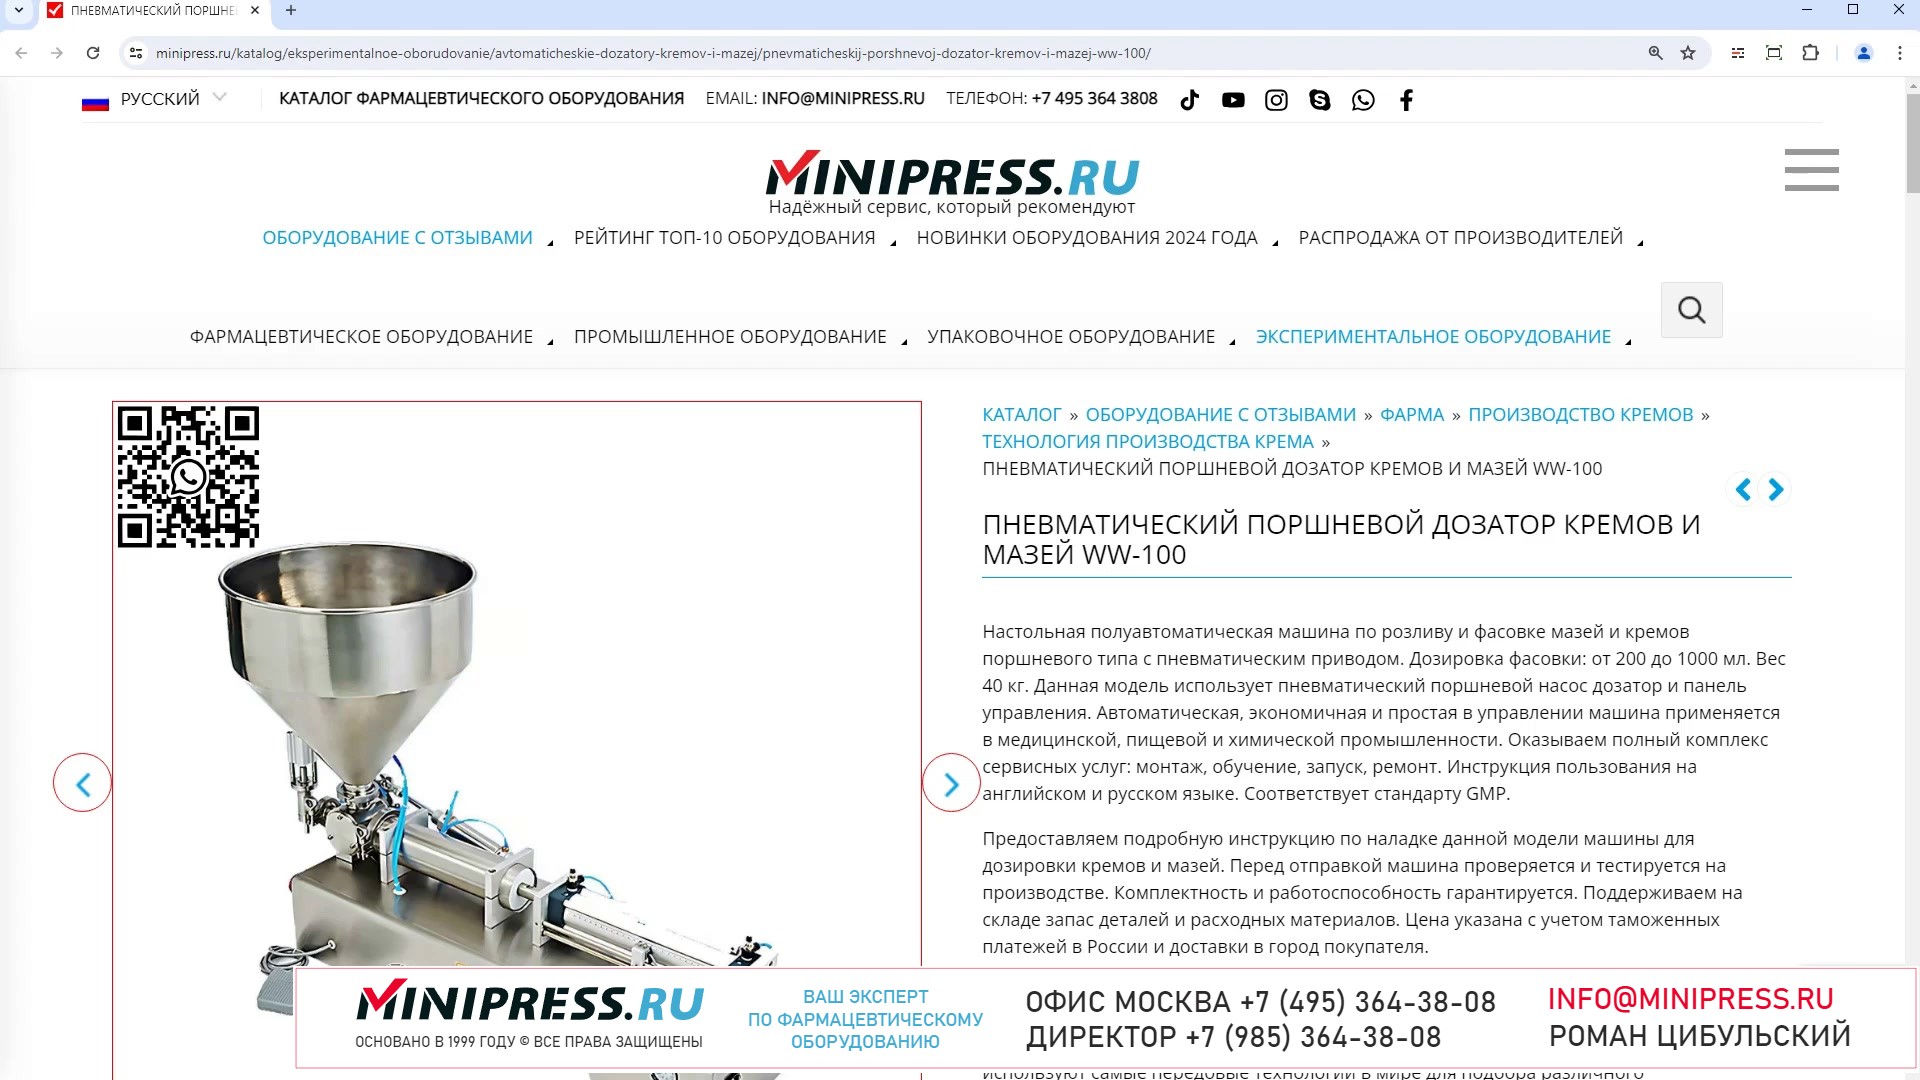 Minipress.ru Пневматический поршневой дозатор кремов и мазей WW-100